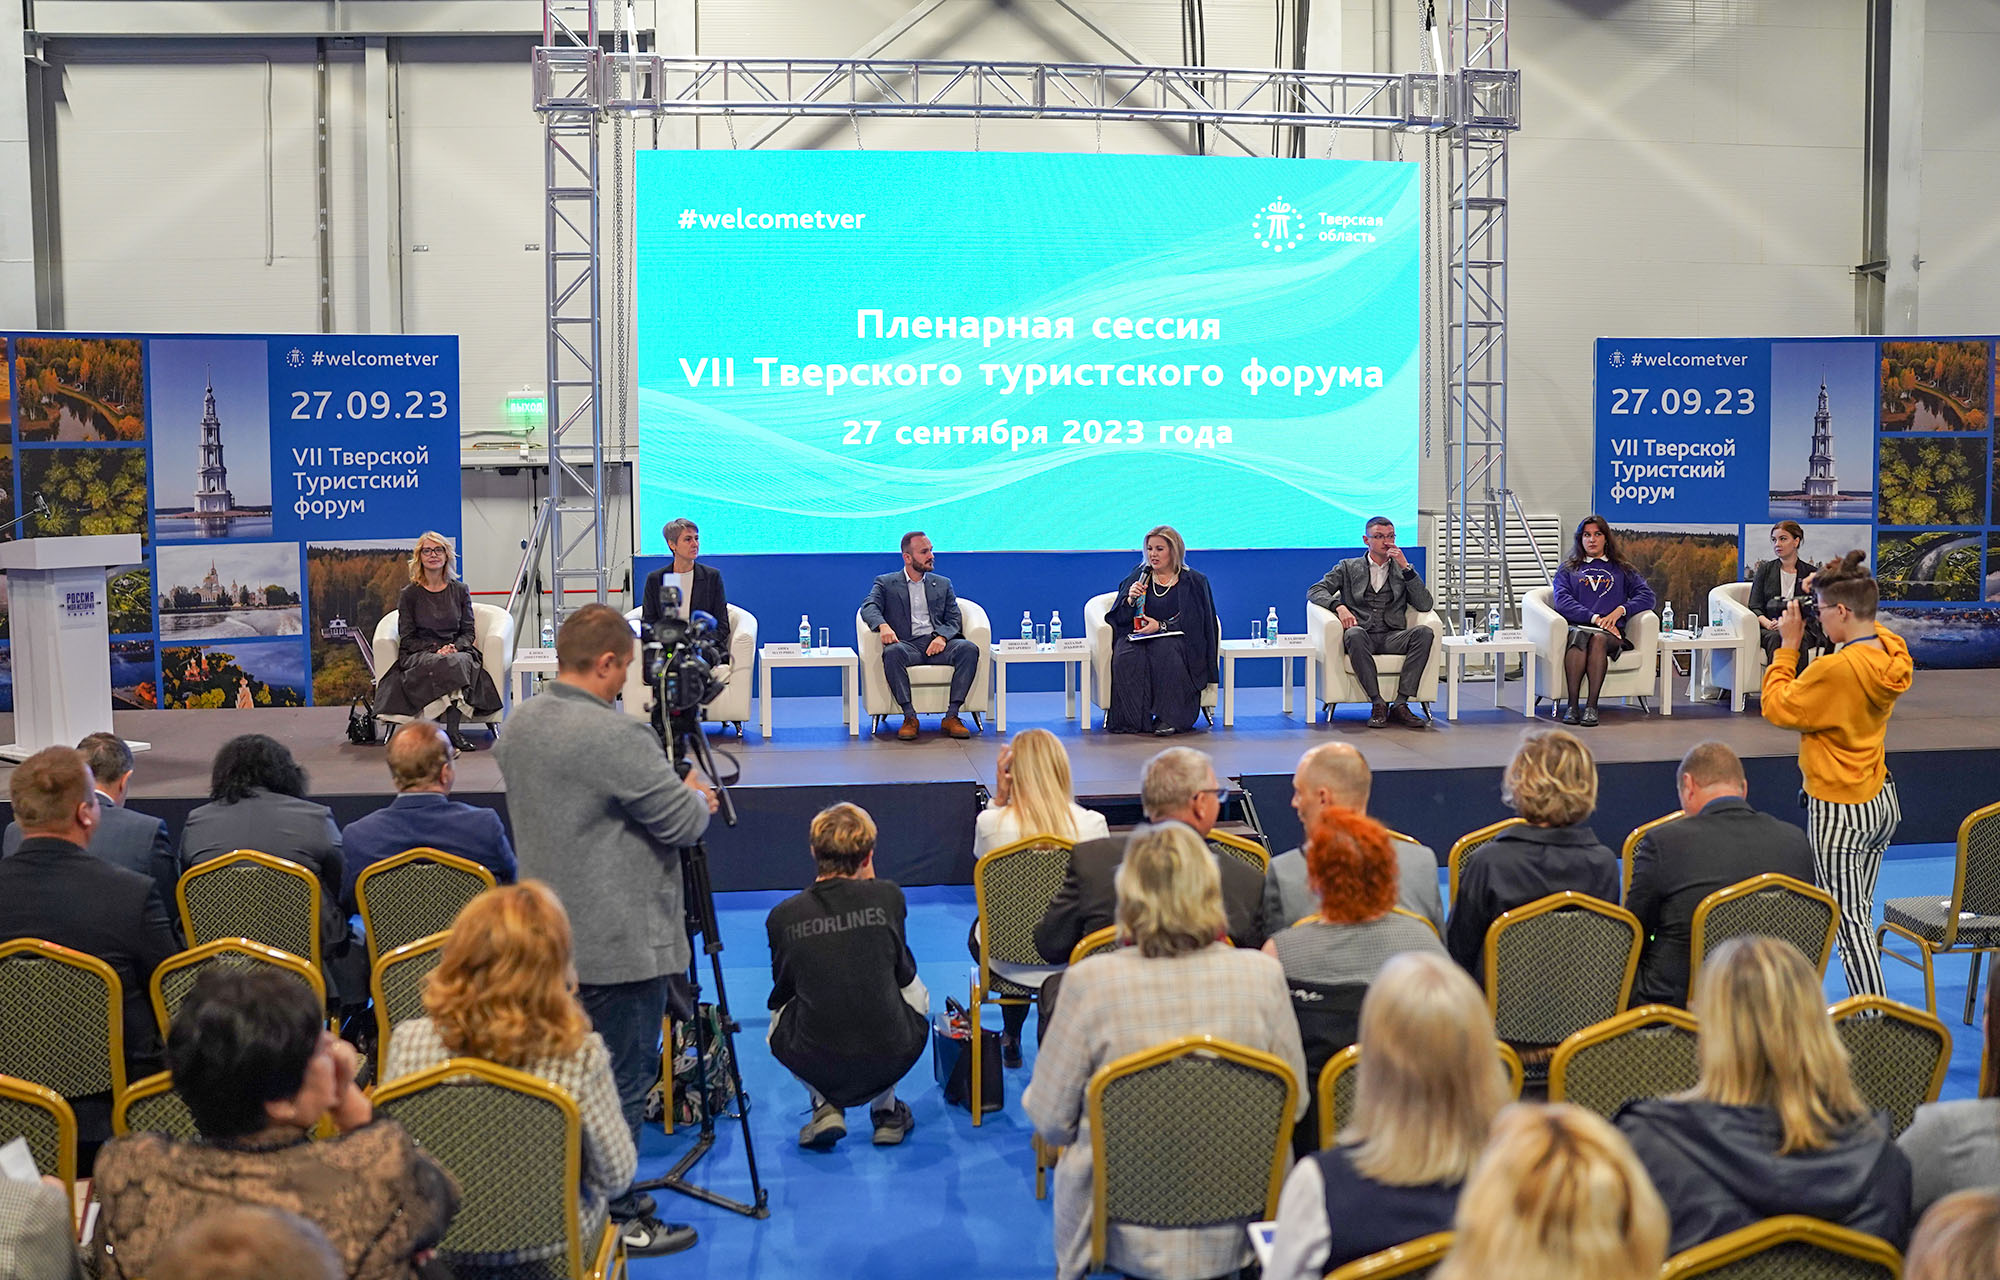 Во всемирный День туризма состоялся Тверской туристский форум